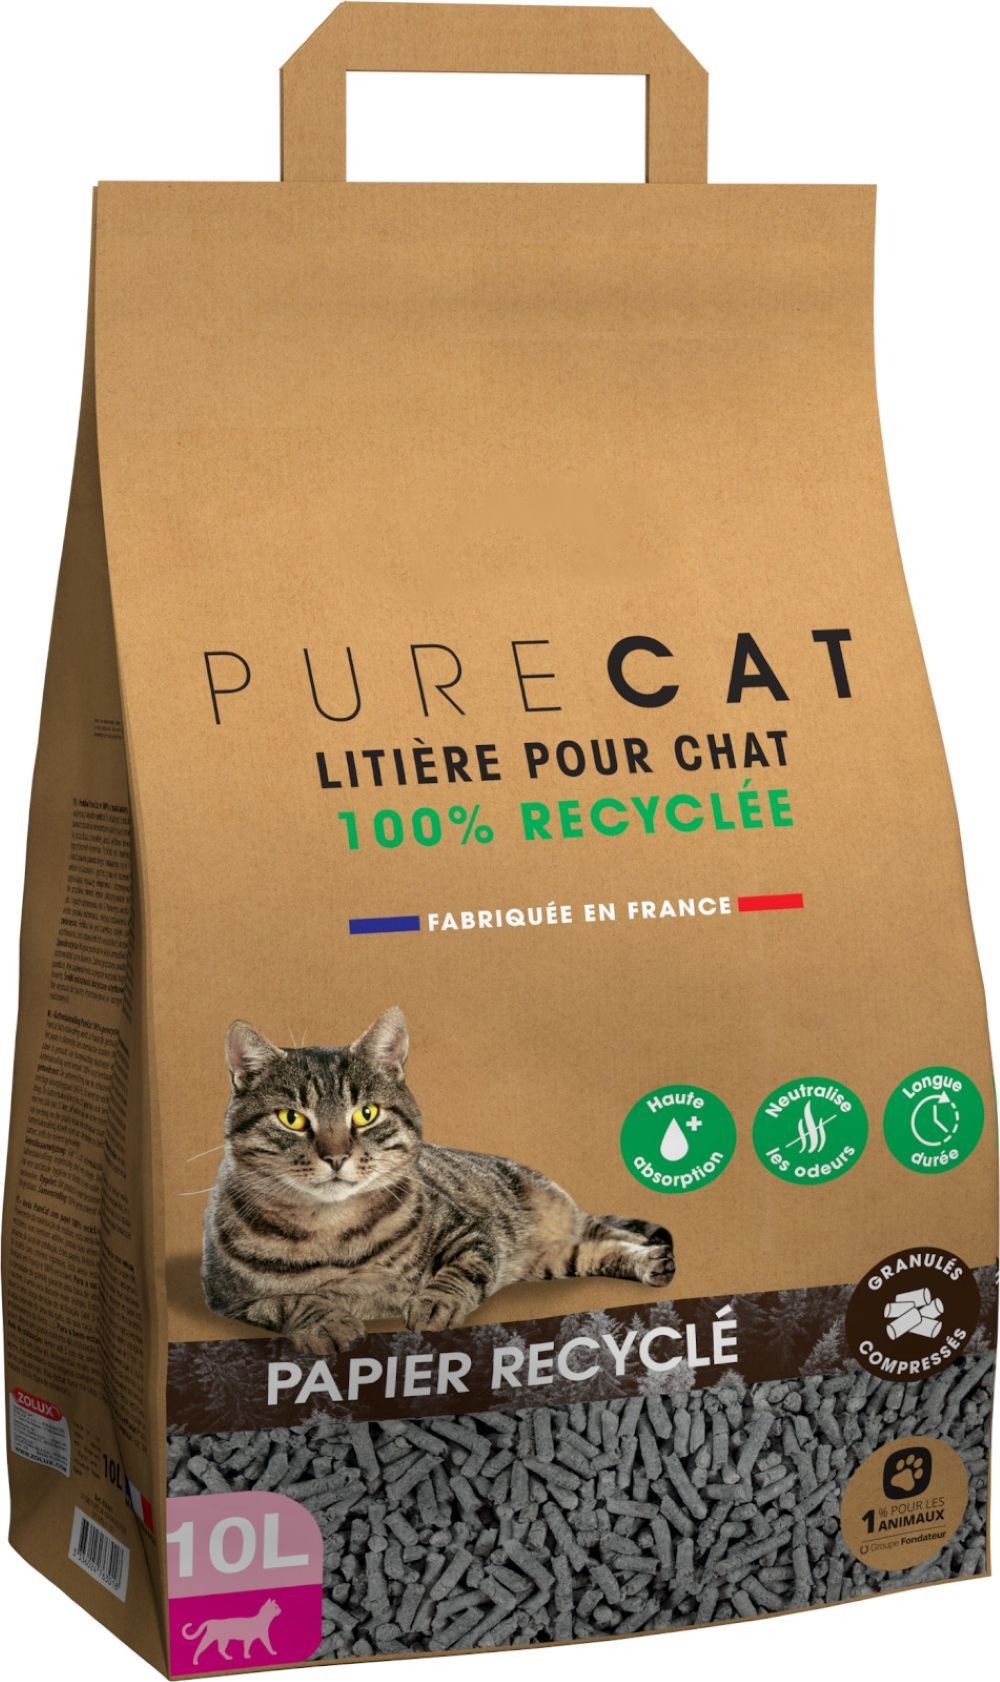 Où jeter la litière du chat ? Est-elle recyclable ?